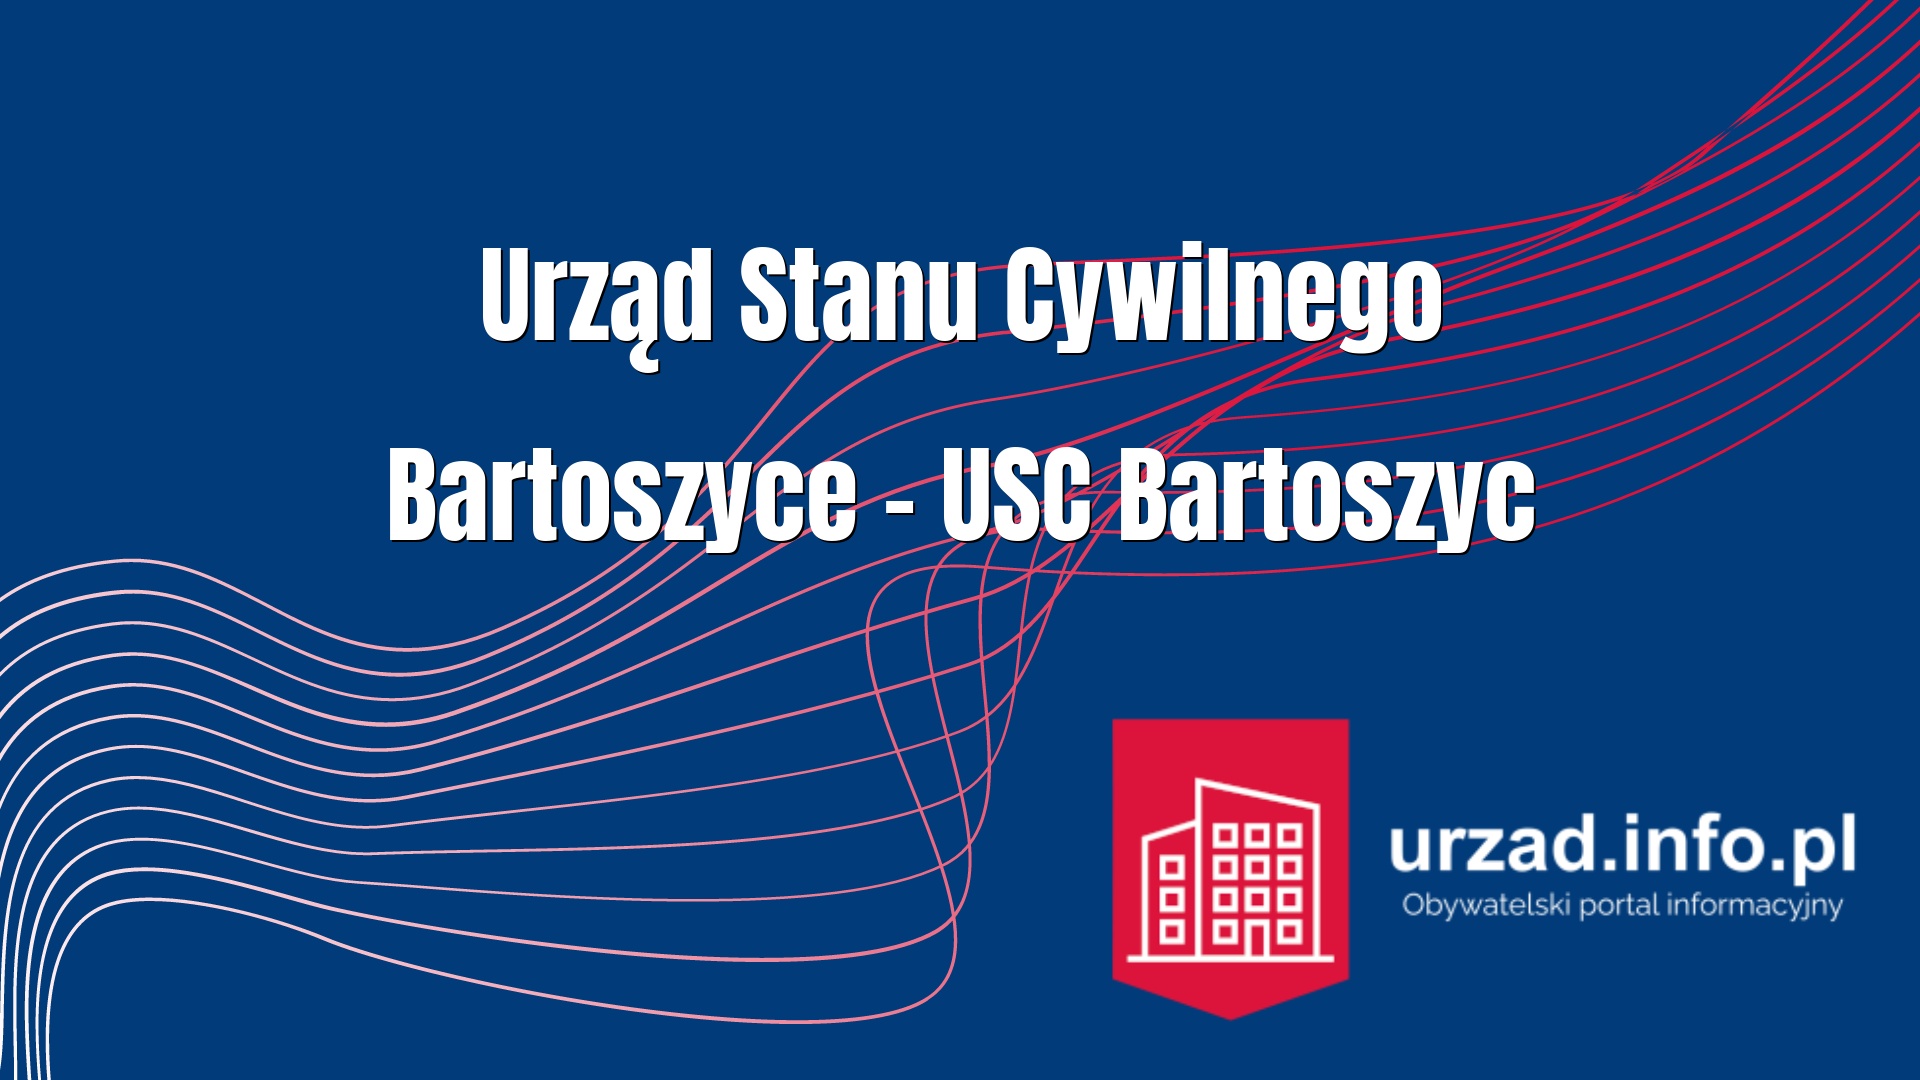 Urząd Stanu Cywilnego Bartoszyce – USC Bartoszyc